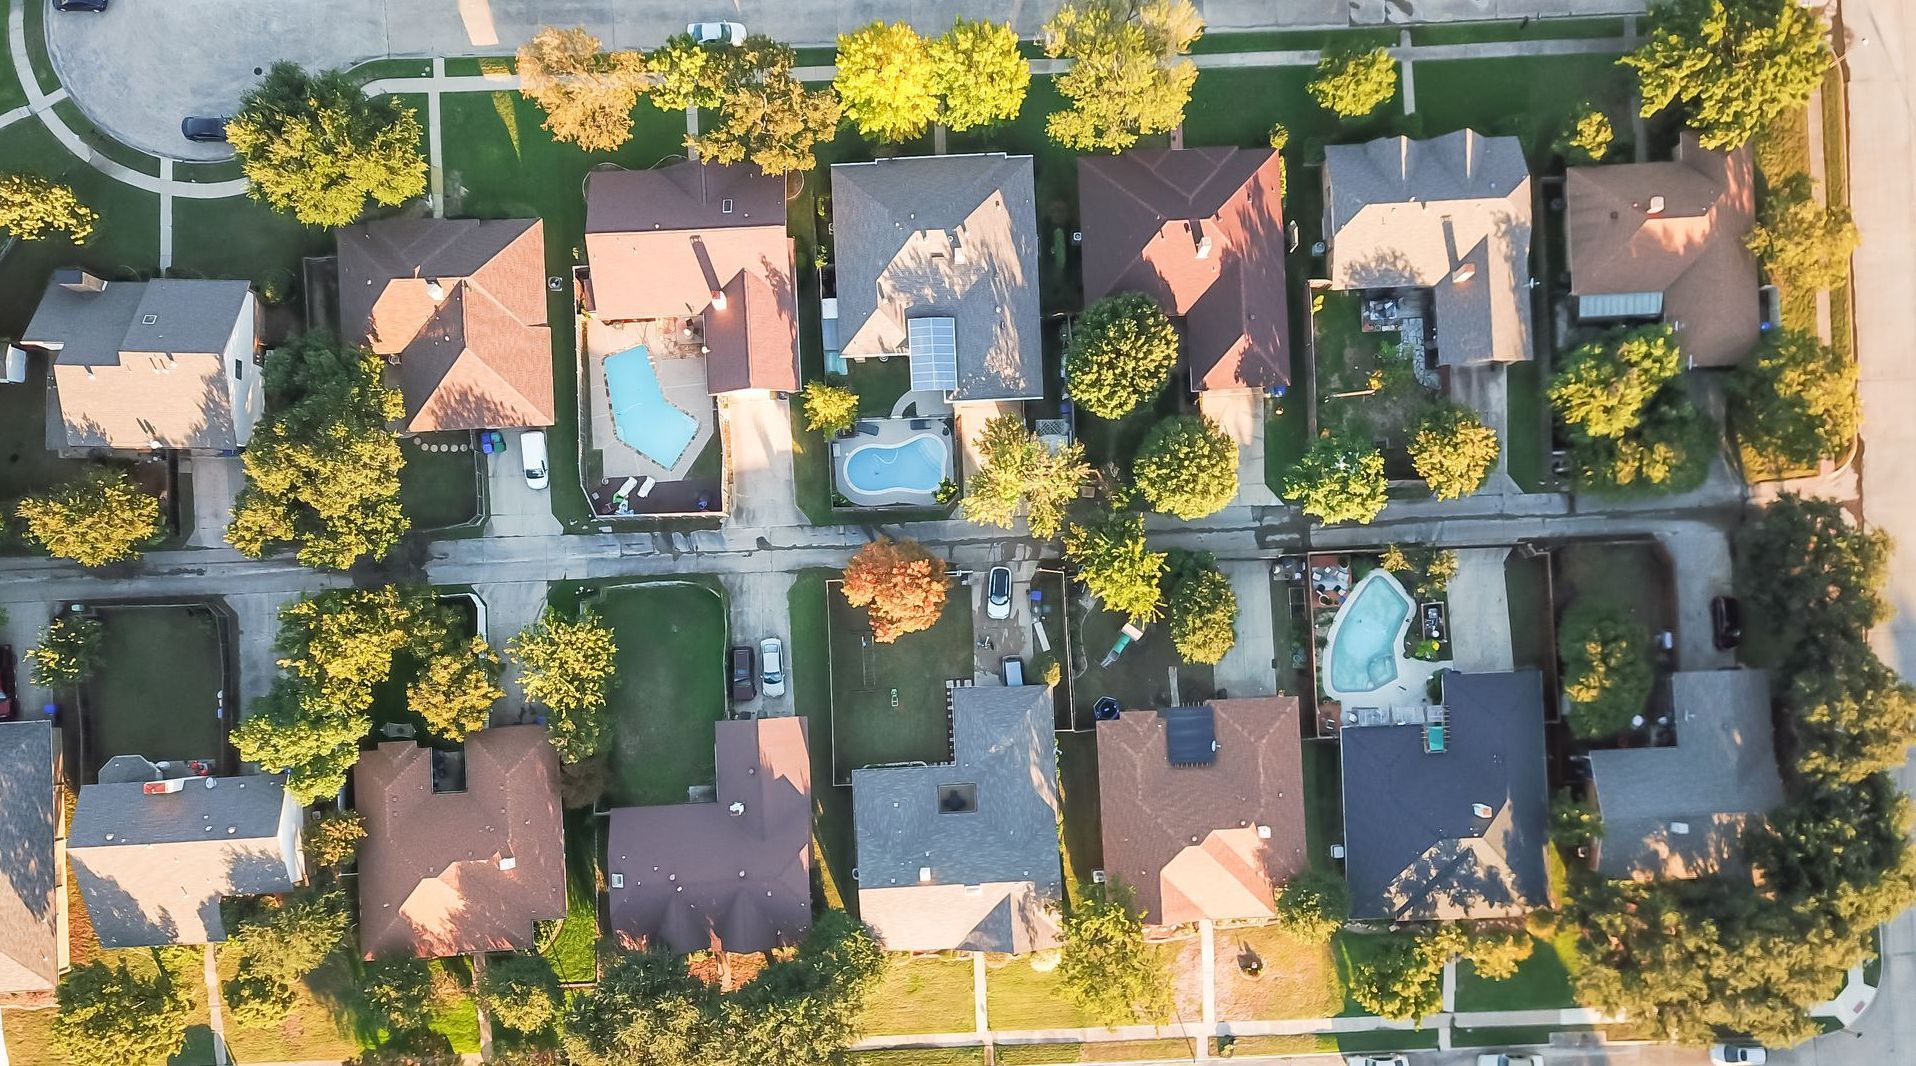 Overhead shot of neighborhood with shingle roofs